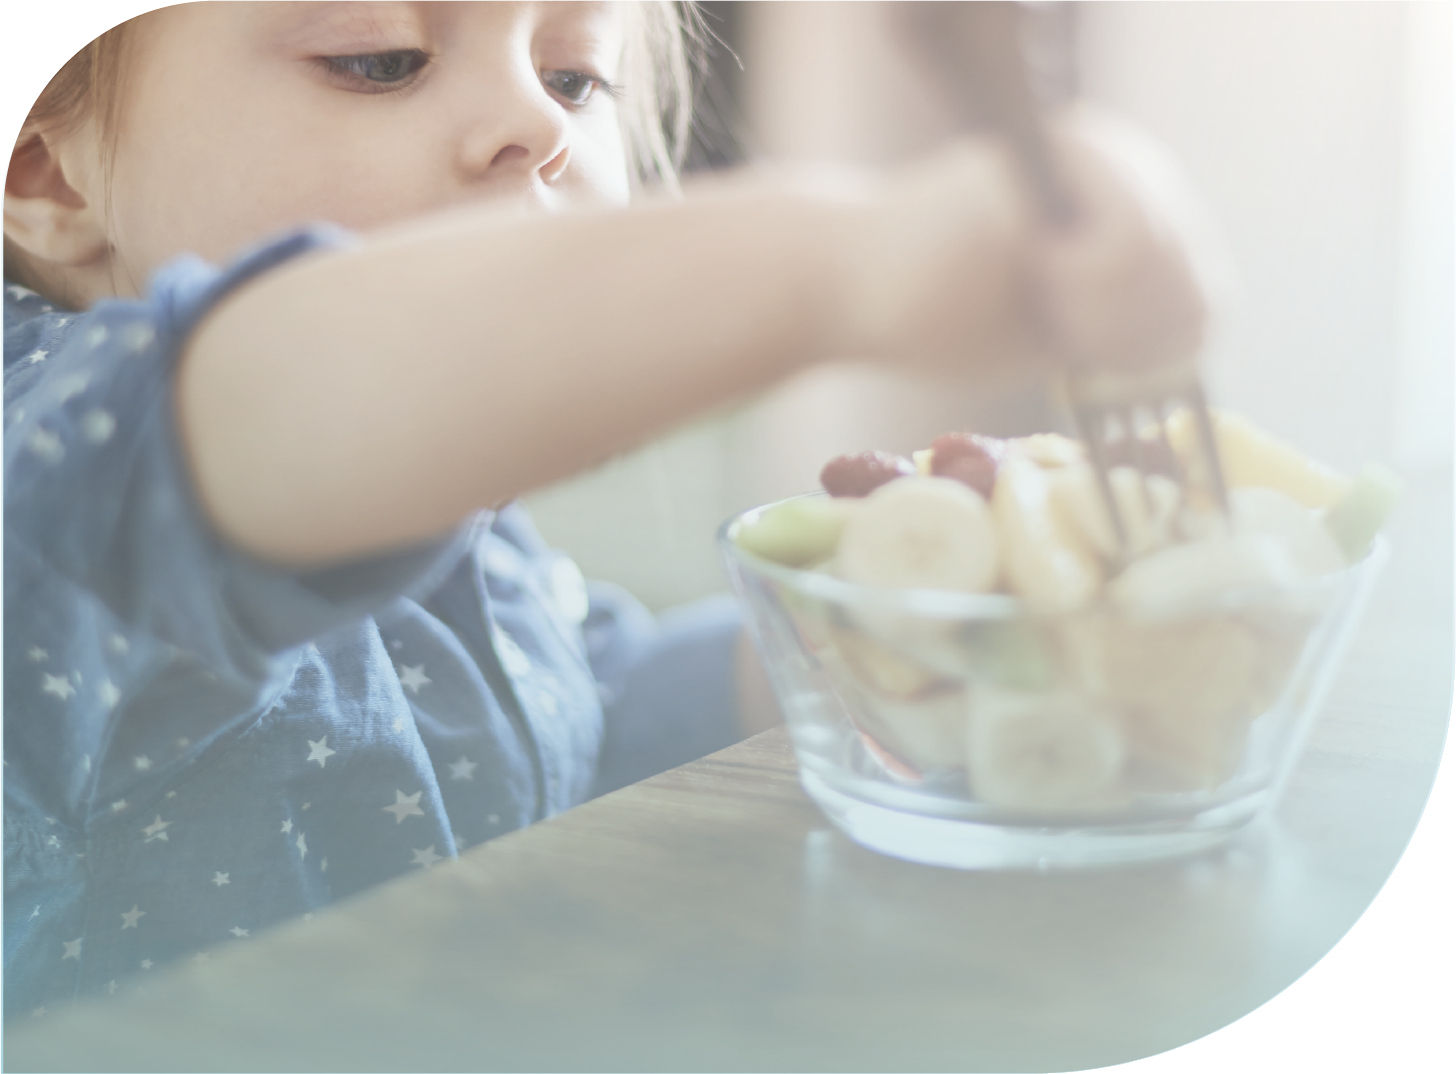 Patrones dietéticos en la infancia y adolescencia, y su asociación con enfermedades crónicas